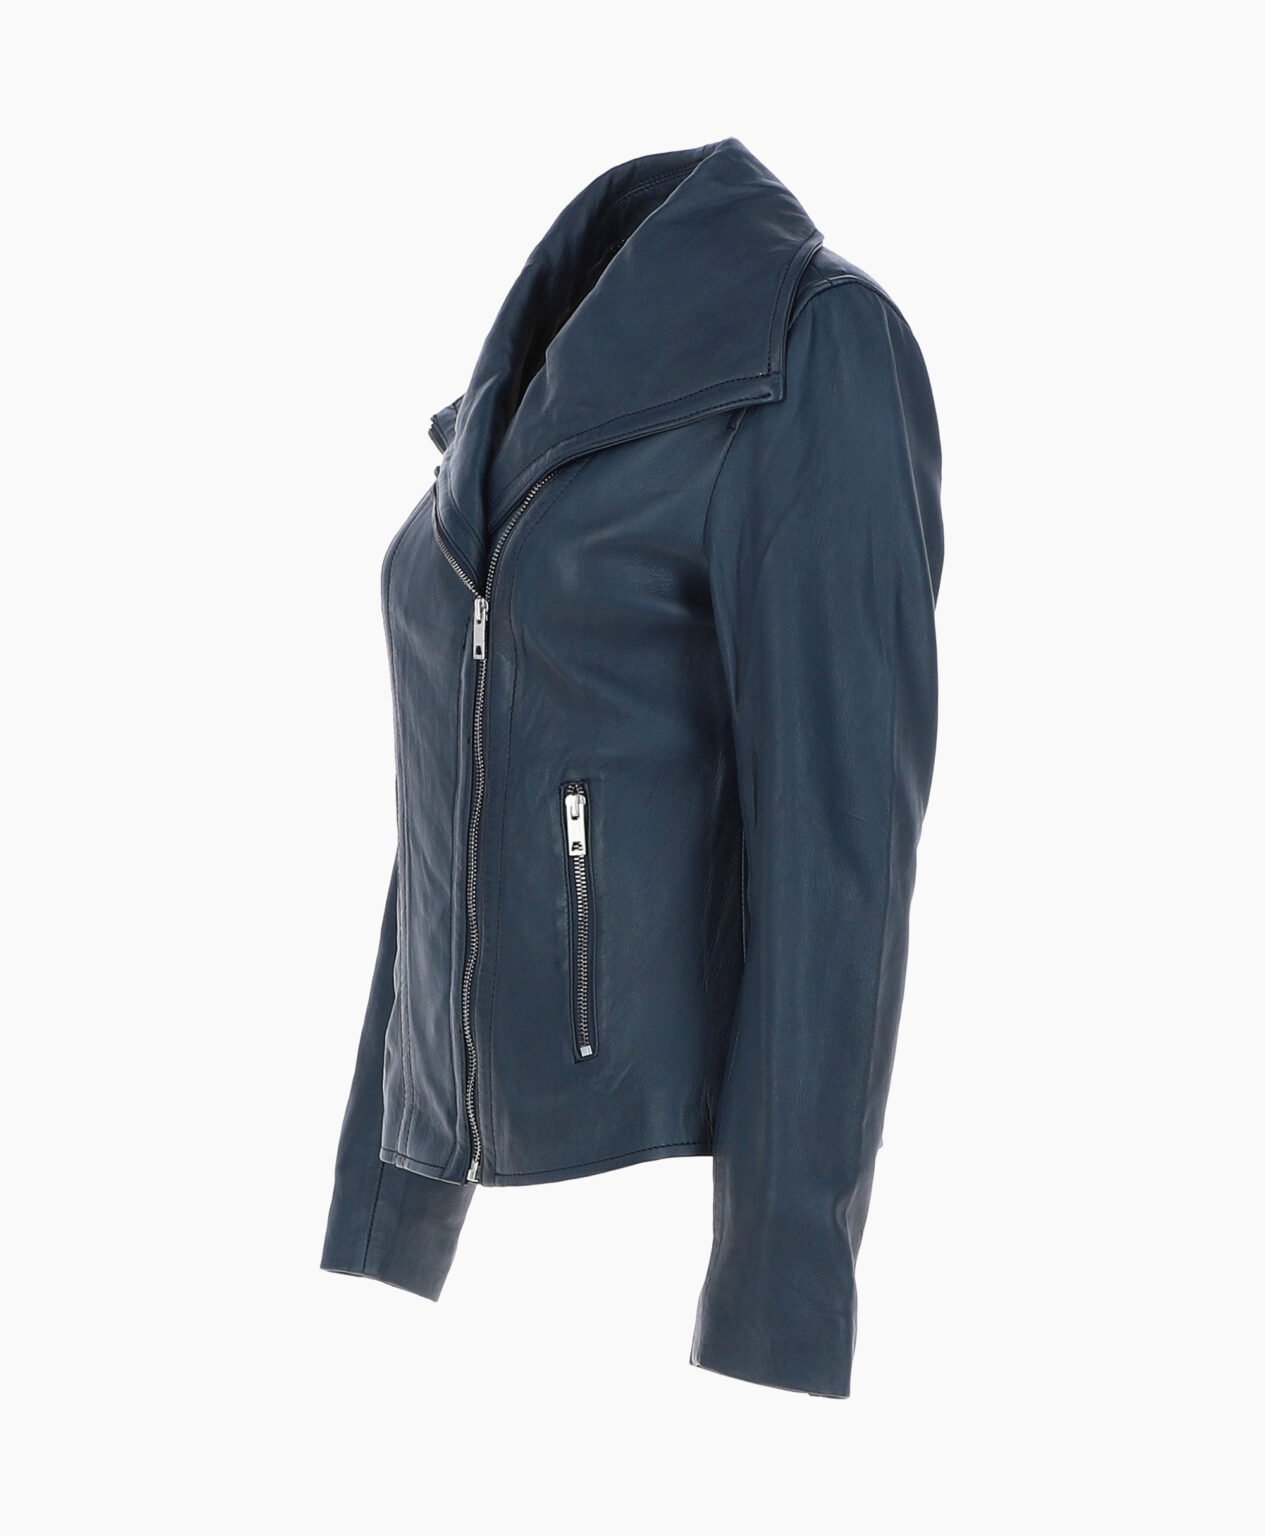 vogue-jacket-leather-jacket-fashion-collar-navy-shelby-image201